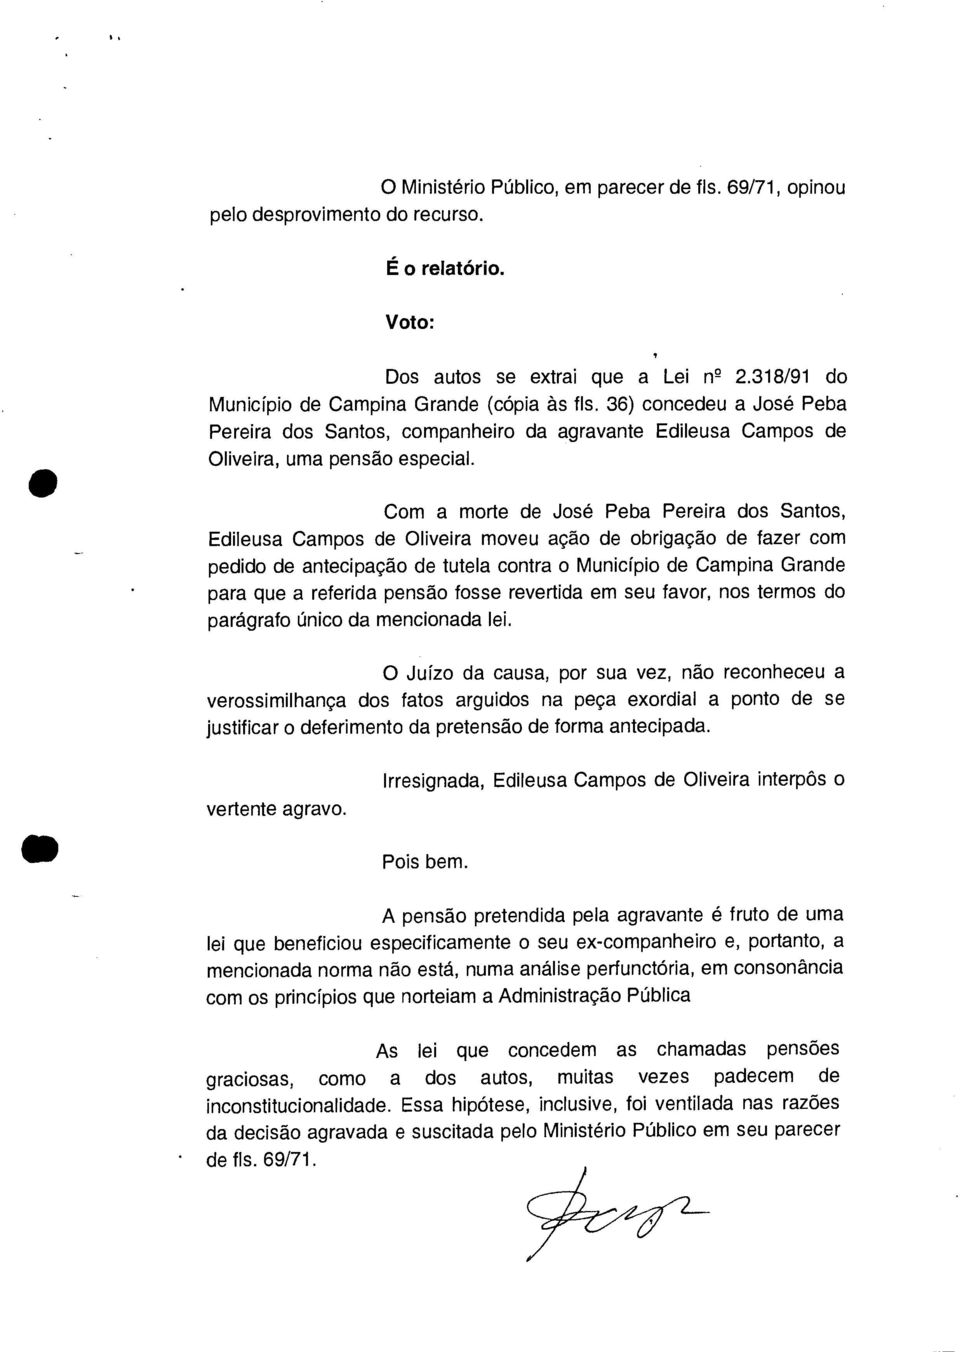 Com a morte de José Peba Pereira dos Santos, Edileusa Campos de Oliveira moveu ação de obrigação de fazer com pedido de antecipação de tutela contra o Município de Campina Grande para que a referida